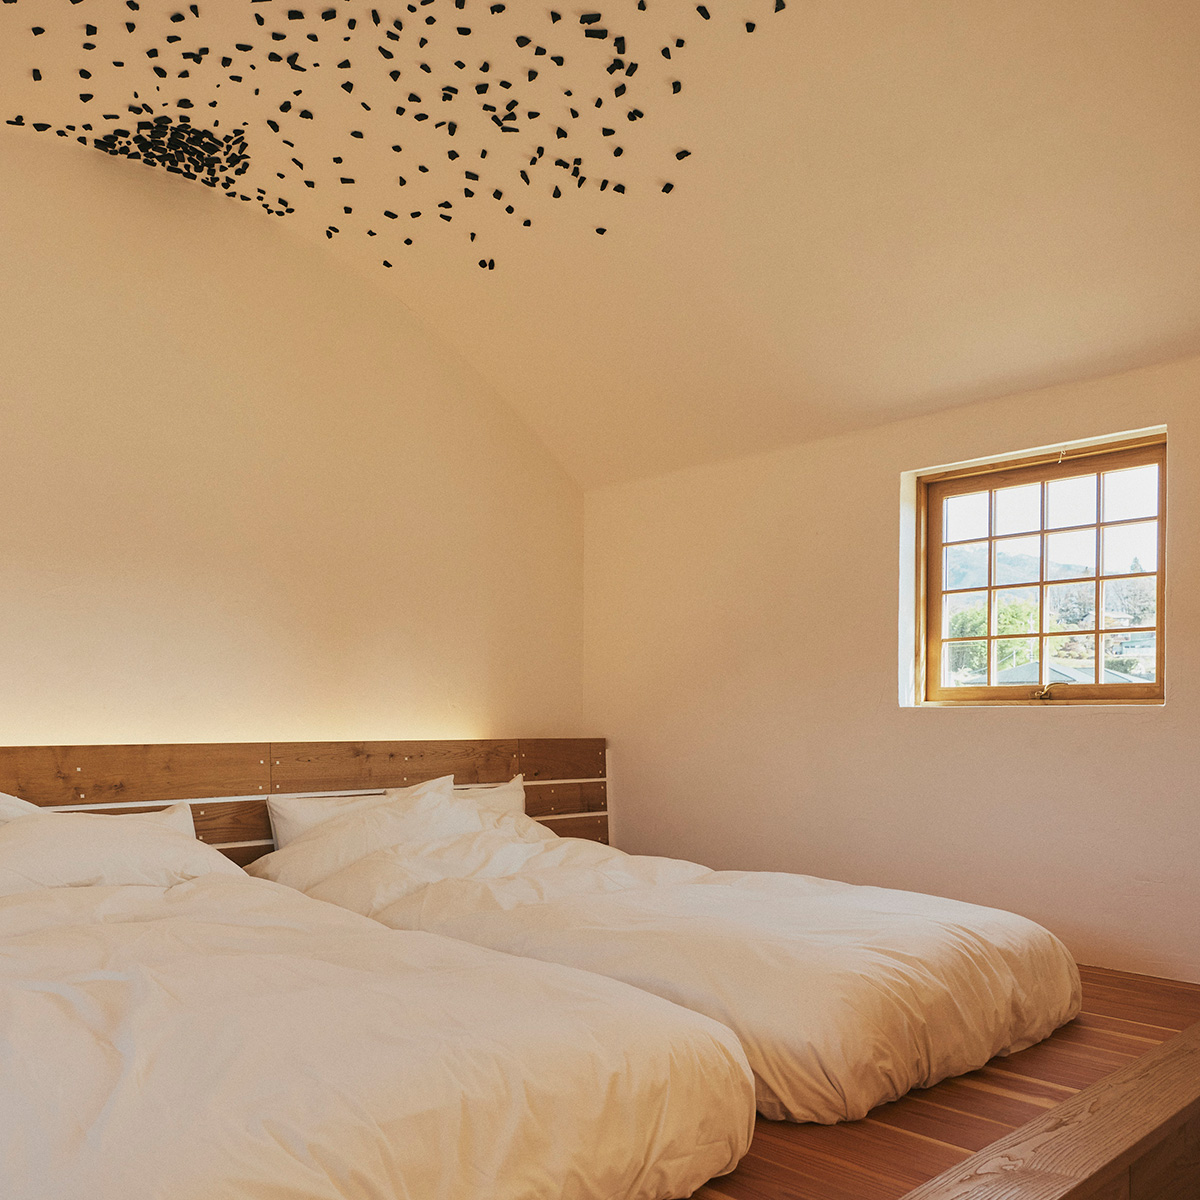 藤森建築の特徴のひとつ、漆喰の天井に炭を張る意匠はベッドルームで見ることができる。